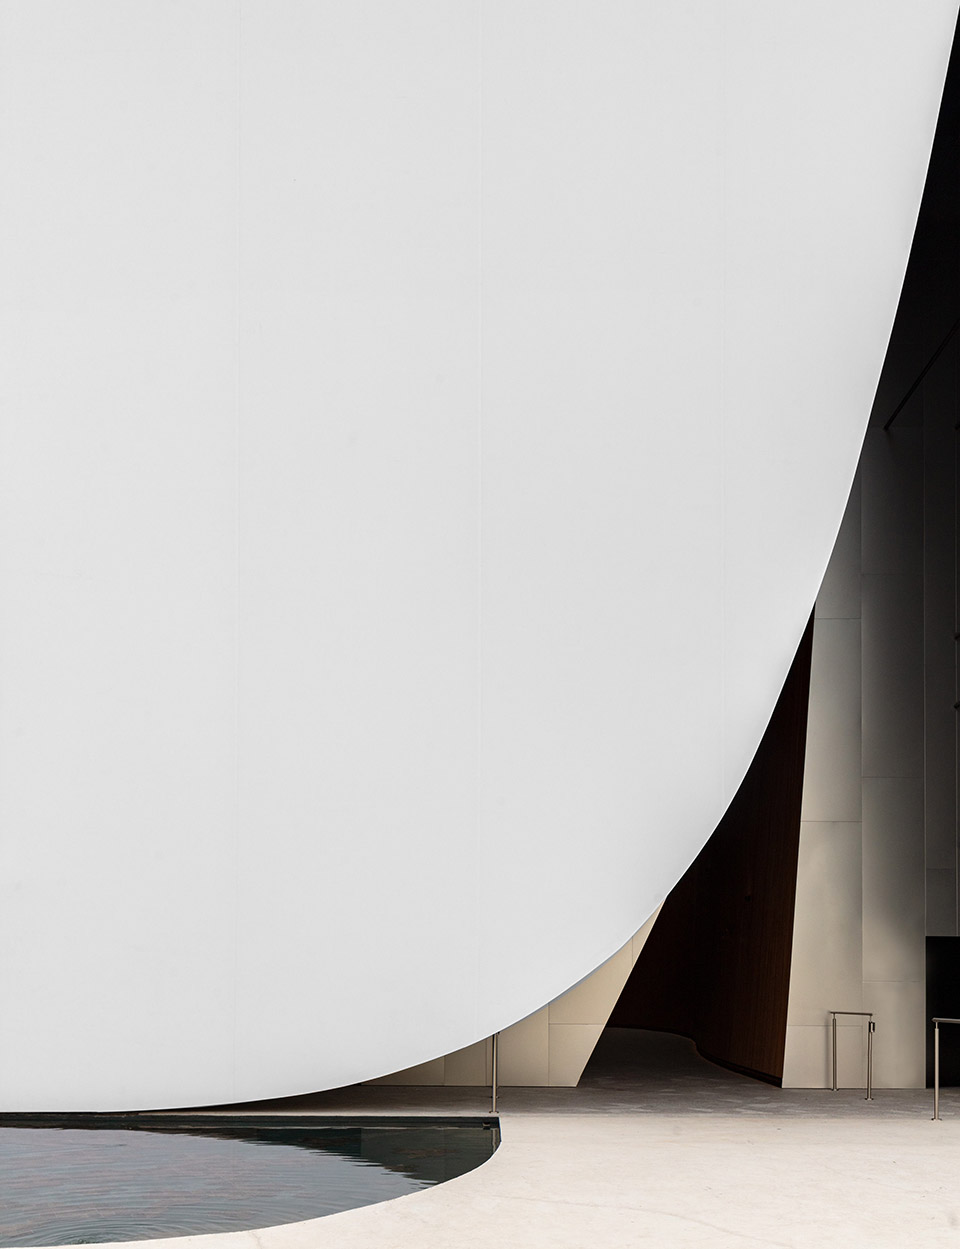 2020迪拜世博会芬兰馆/覆盖在沙漠上的白色积雪-22